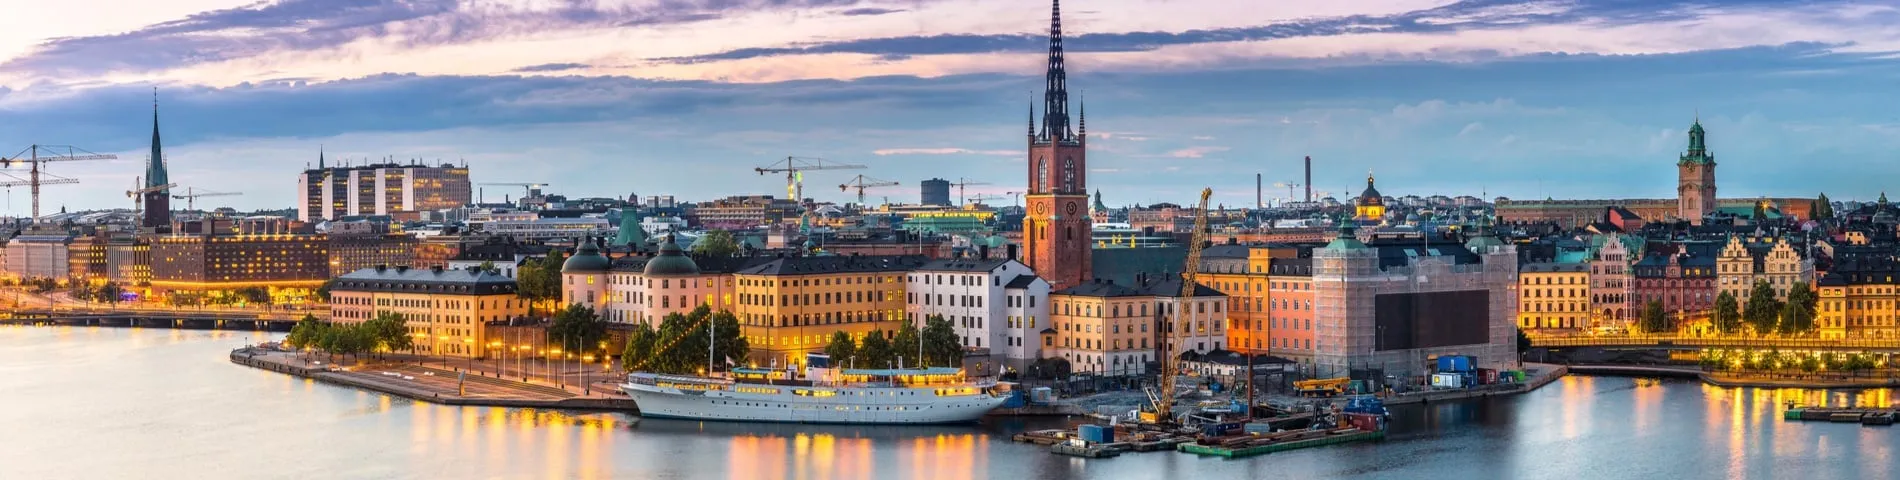 Стокгольм - Другие экзамены